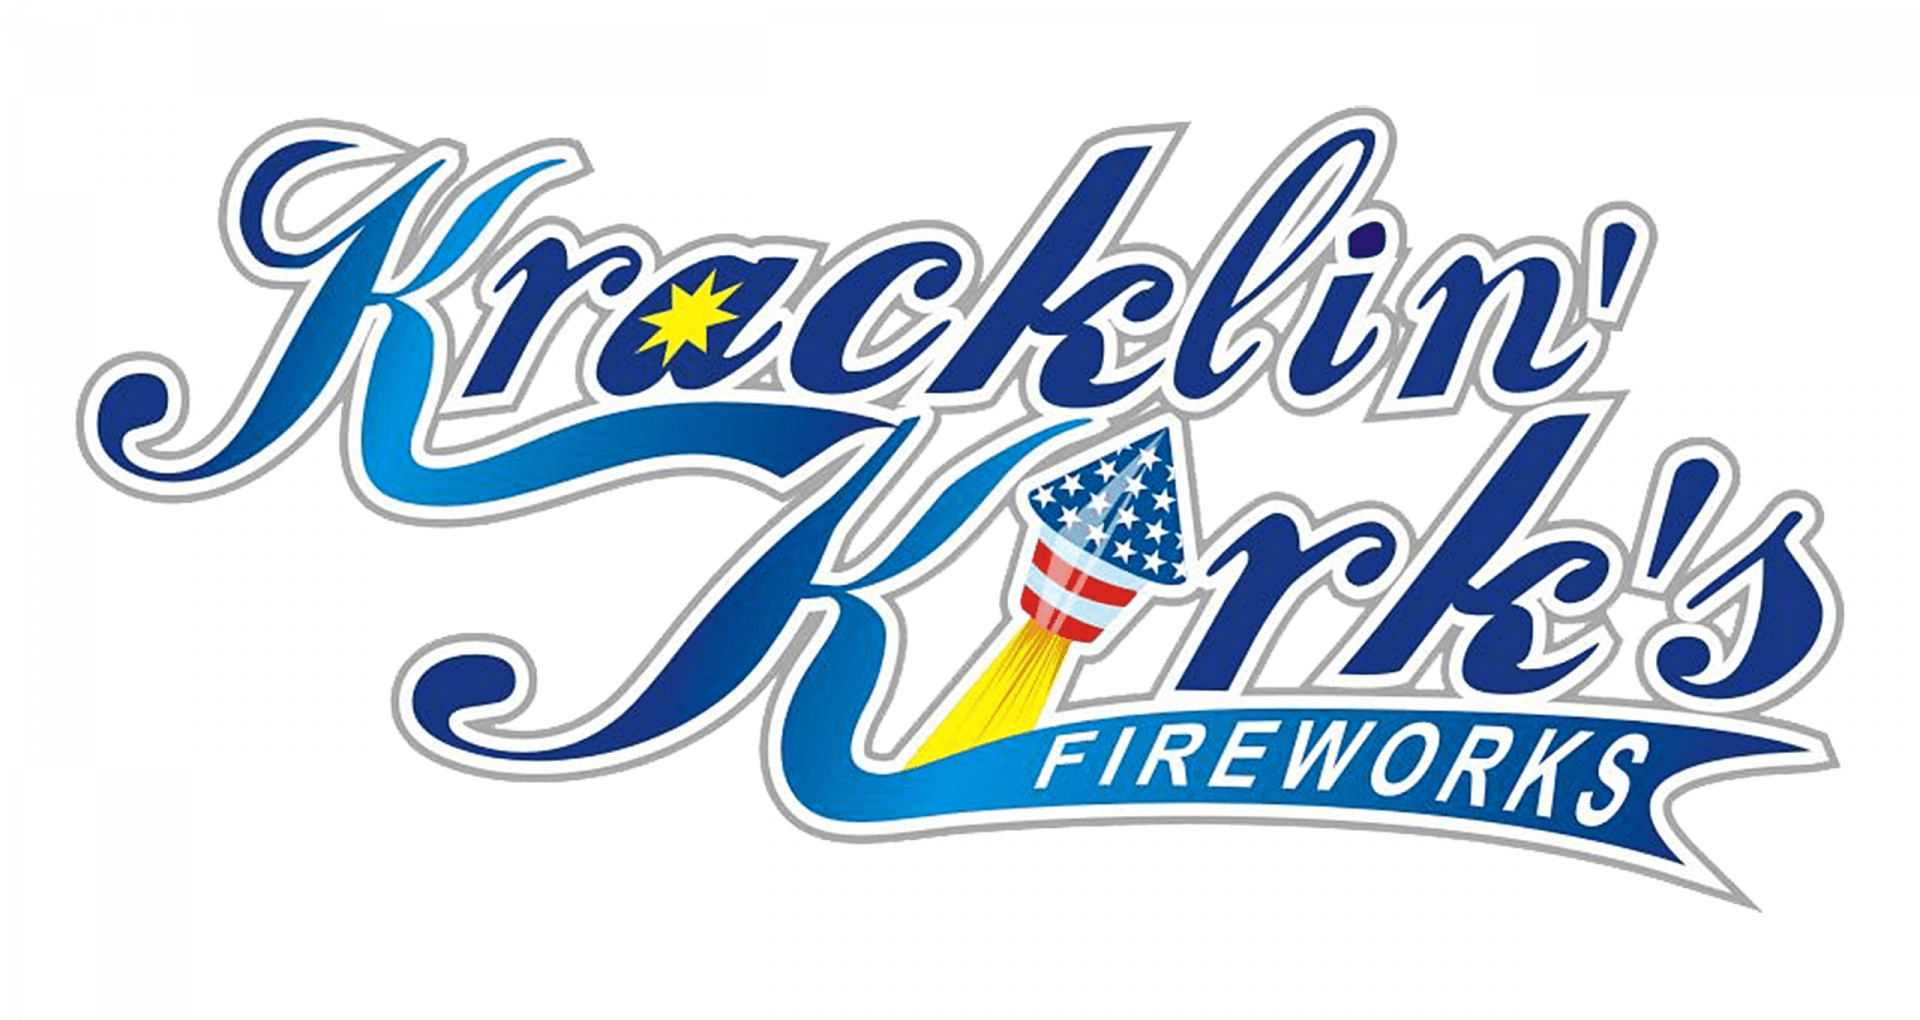 Nebraska's Premier Fireworks Retailer | Kracklin' Kirk's Fireworks